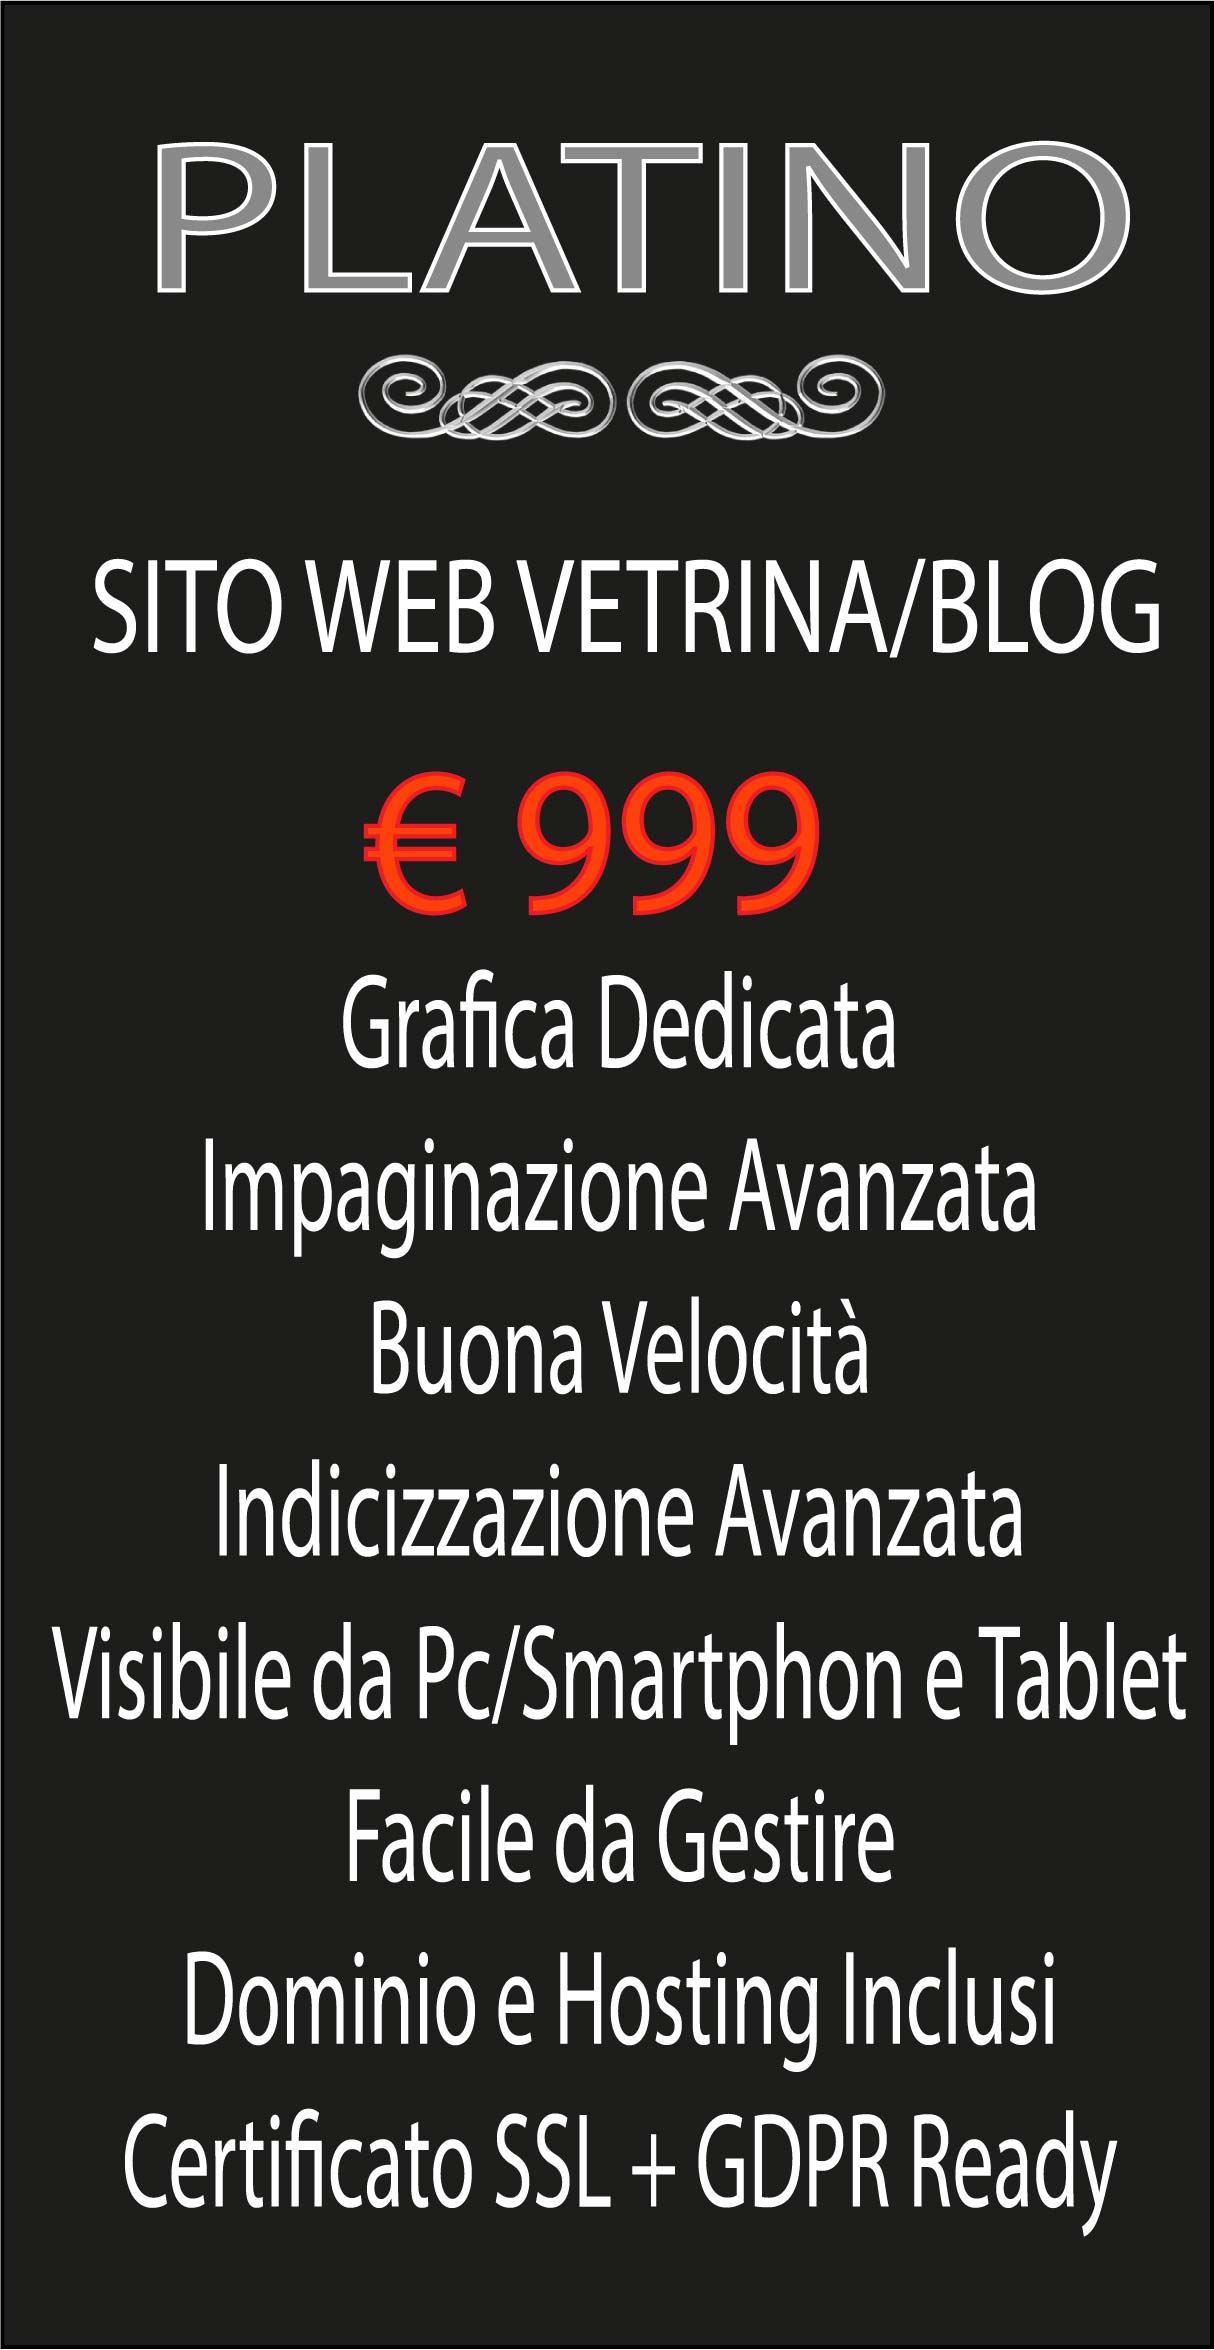 SITO WEB VETRINA/BLOG-PLATINO